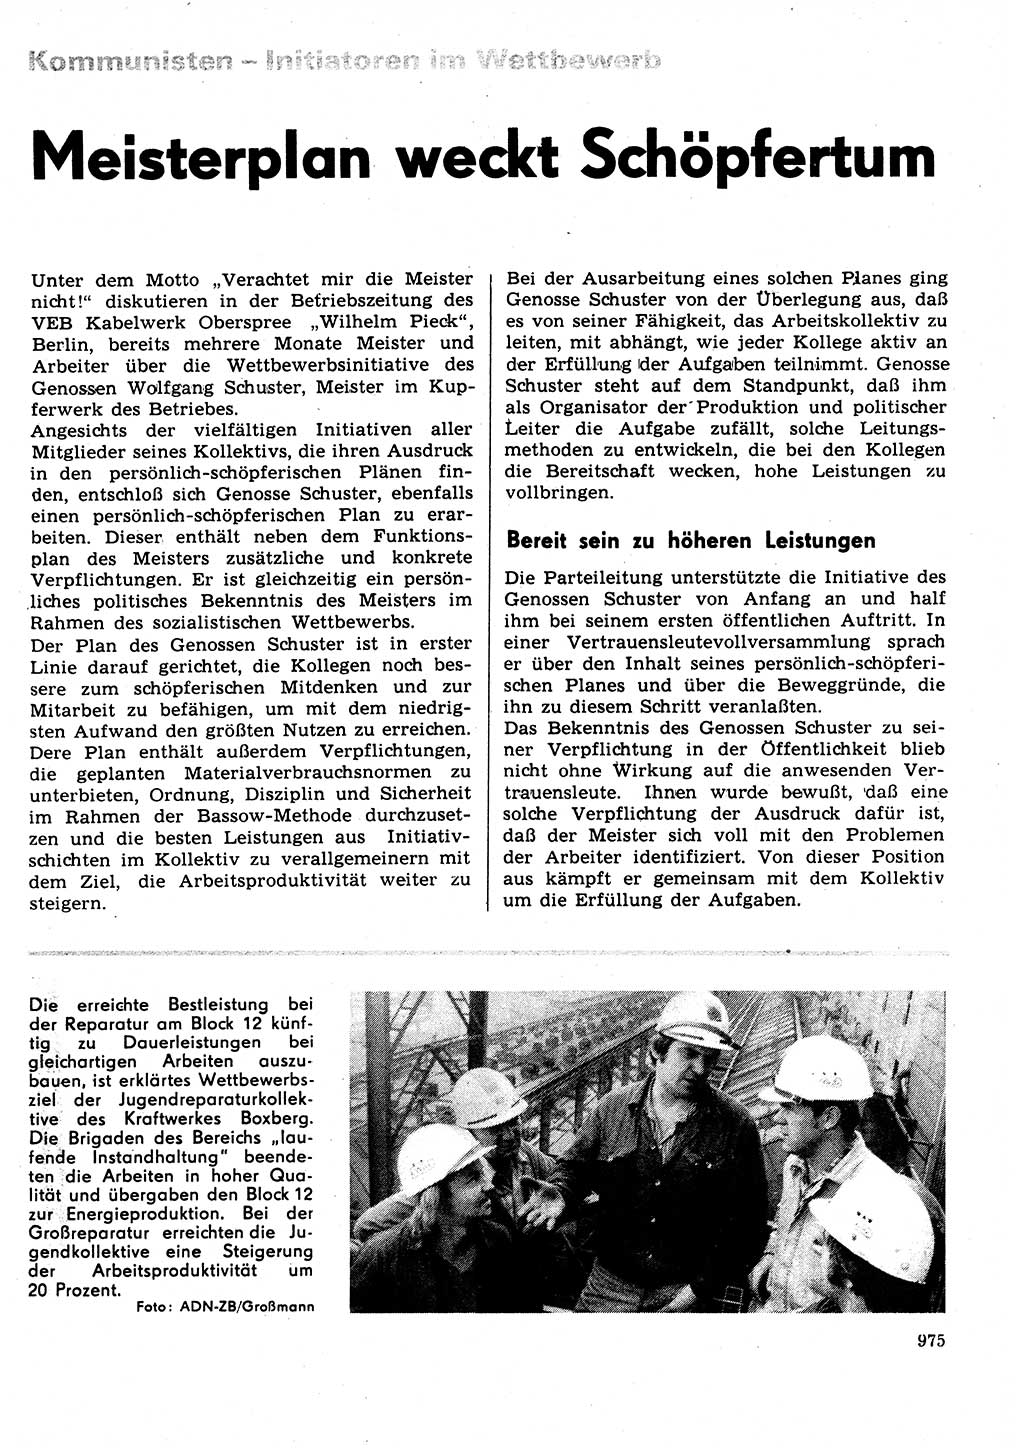 Neuer Weg (NW), Organ des Zentralkomitees (ZK) der SED (Sozialistische Einheitspartei Deutschlands) für Fragen des Parteilebens, 31. Jahrgang [Deutsche Demokratische Republik (DDR)] 1976, Seite 975 (NW ZK SED DDR 1976, S. 975)